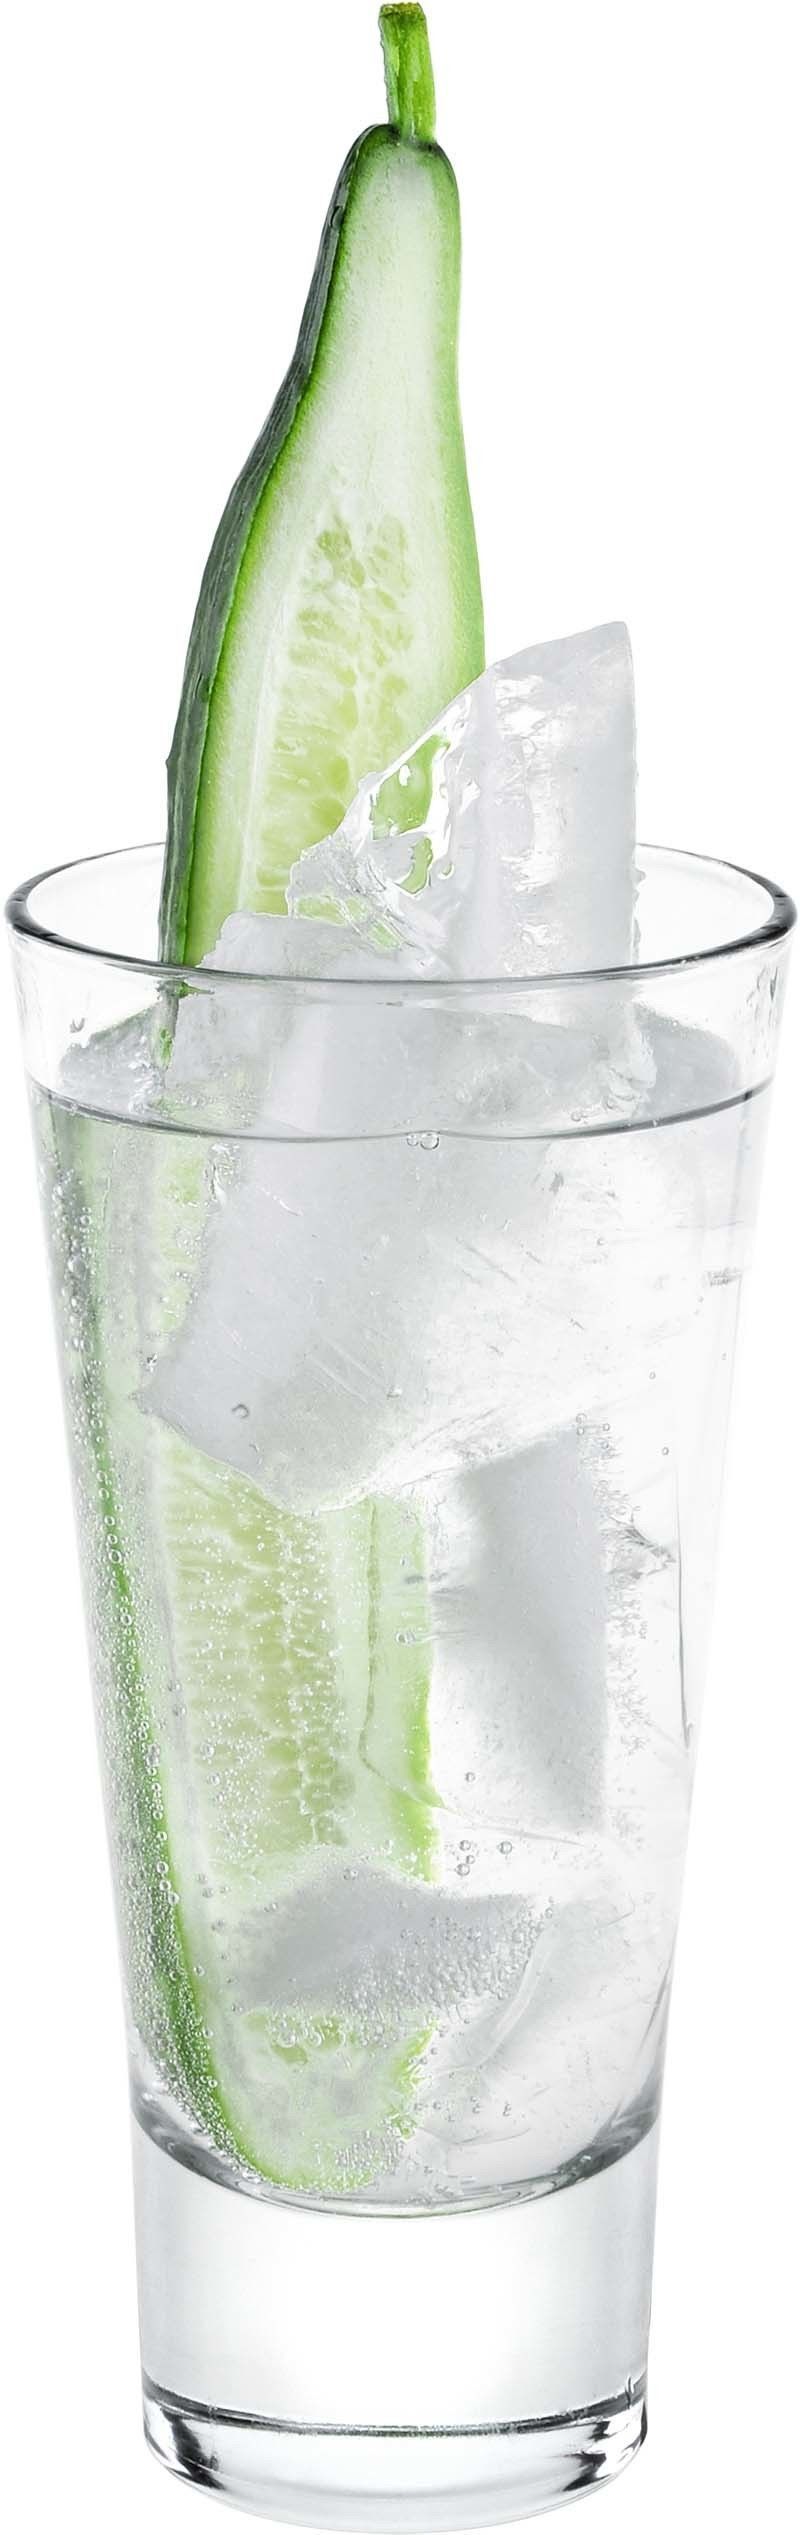 Comment préparer le cocktail Gin Tonic Concombre